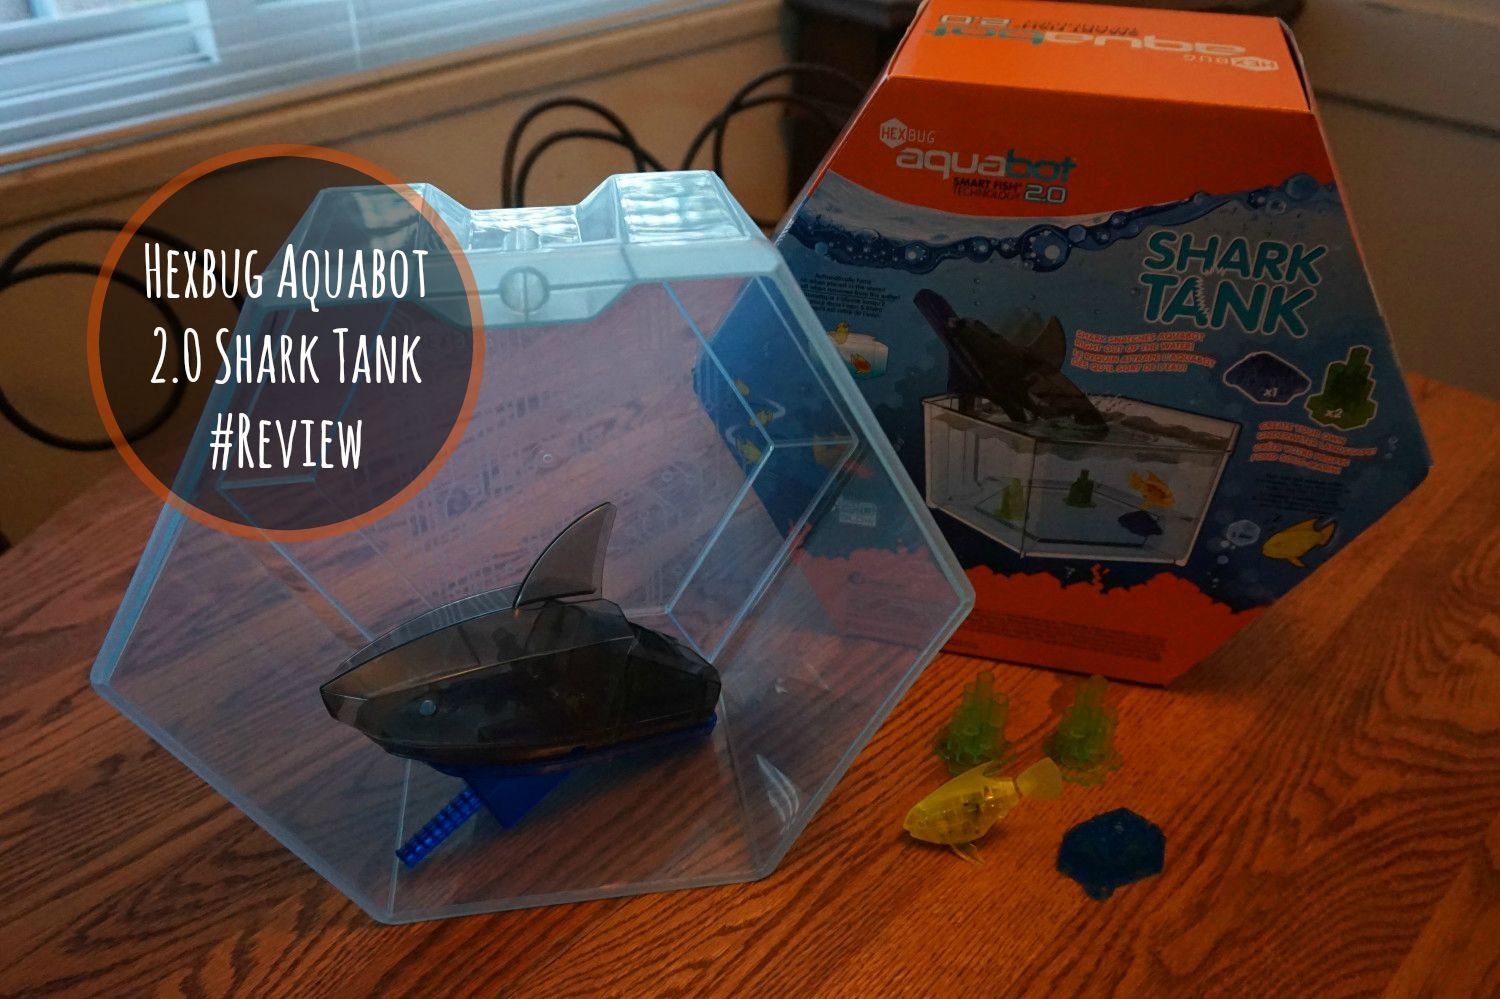 hexbug aquabot 2.0 sharktank